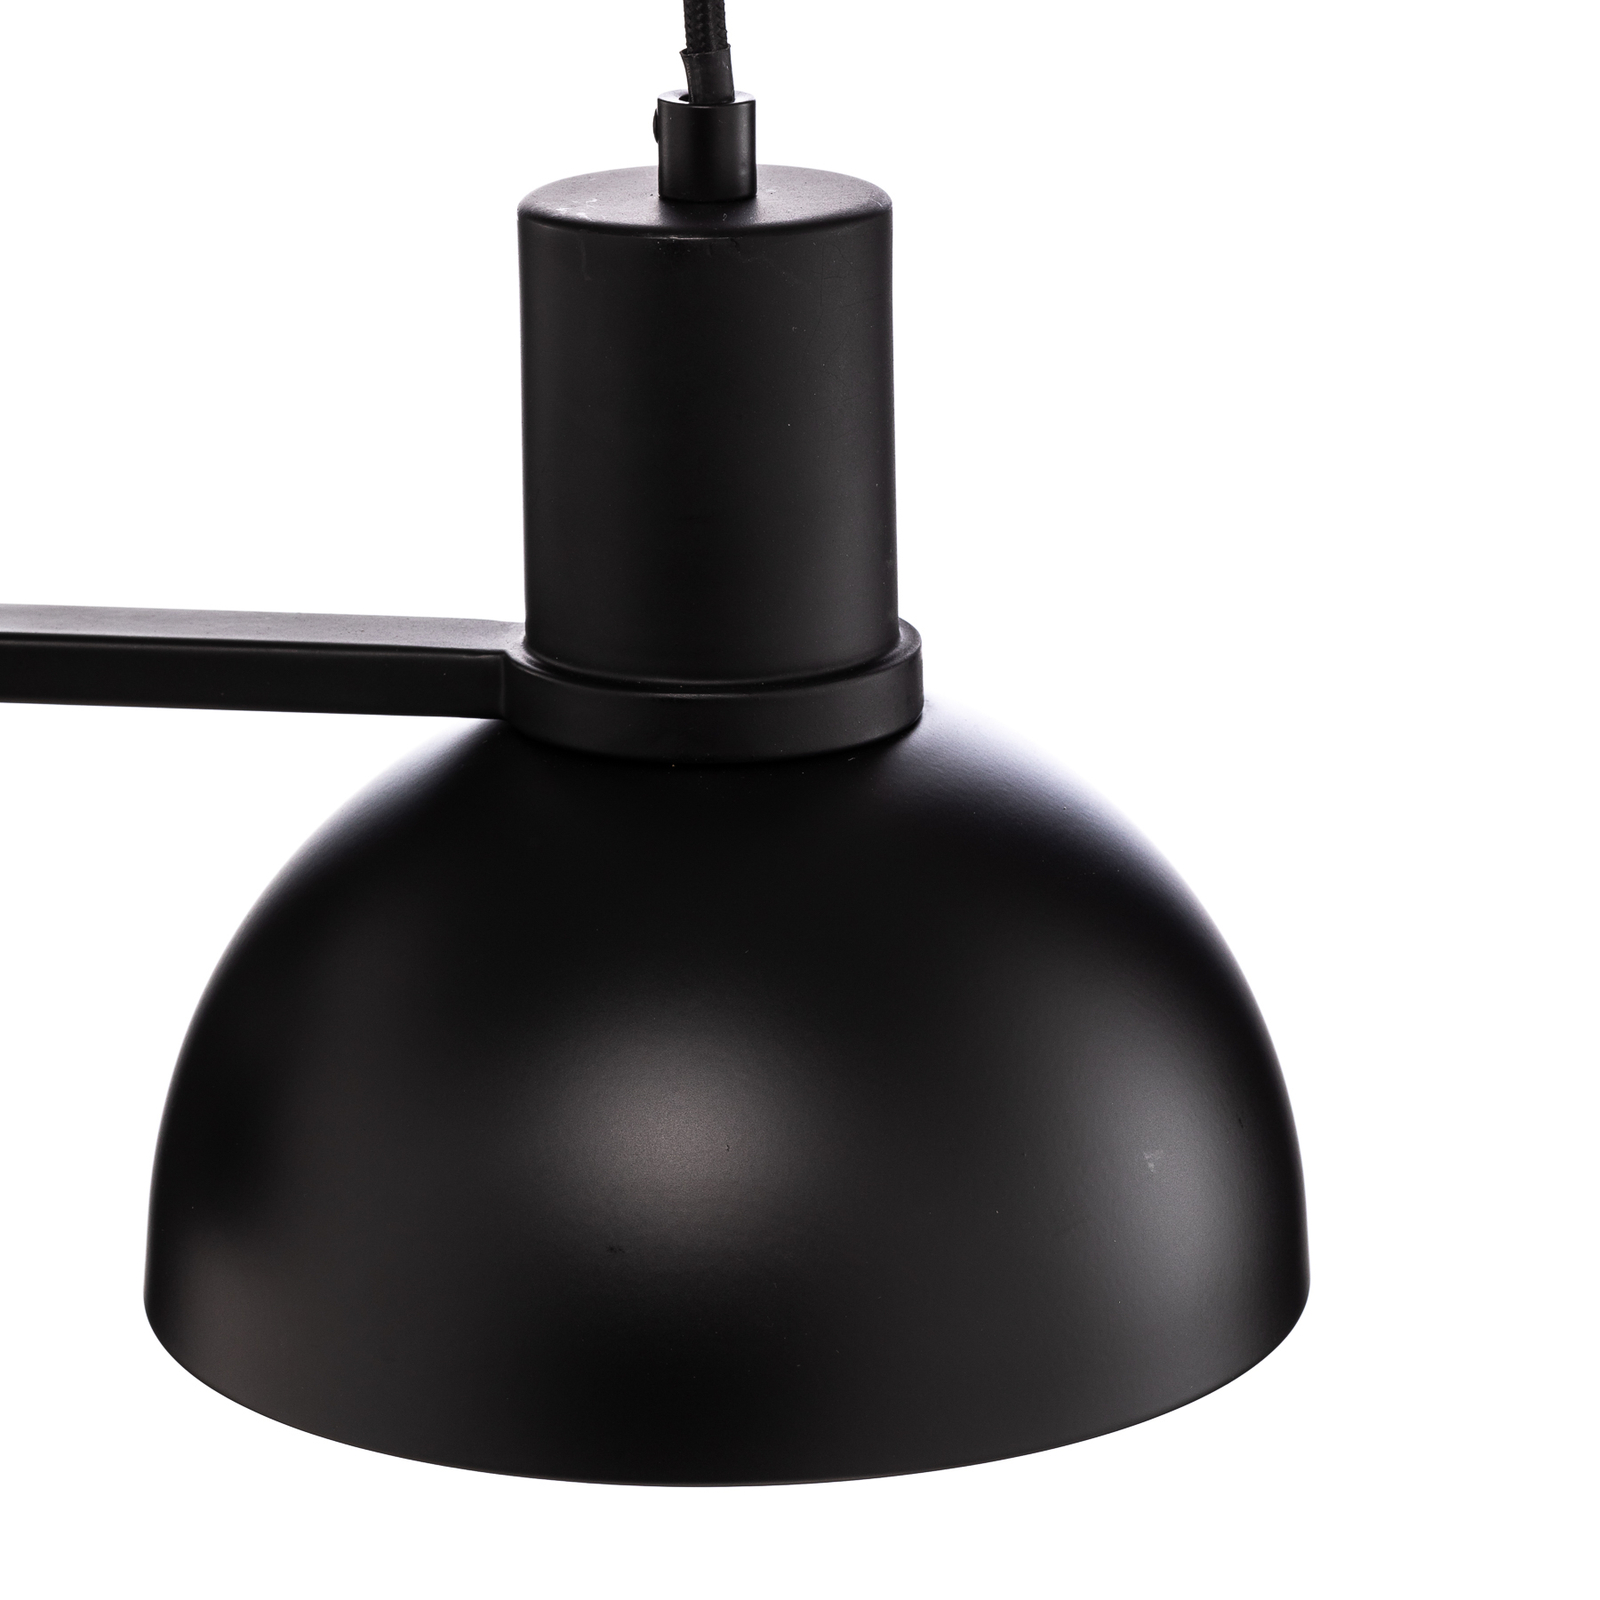 Lucande Mostrid-hængelampe, sort, 2 lyskilder